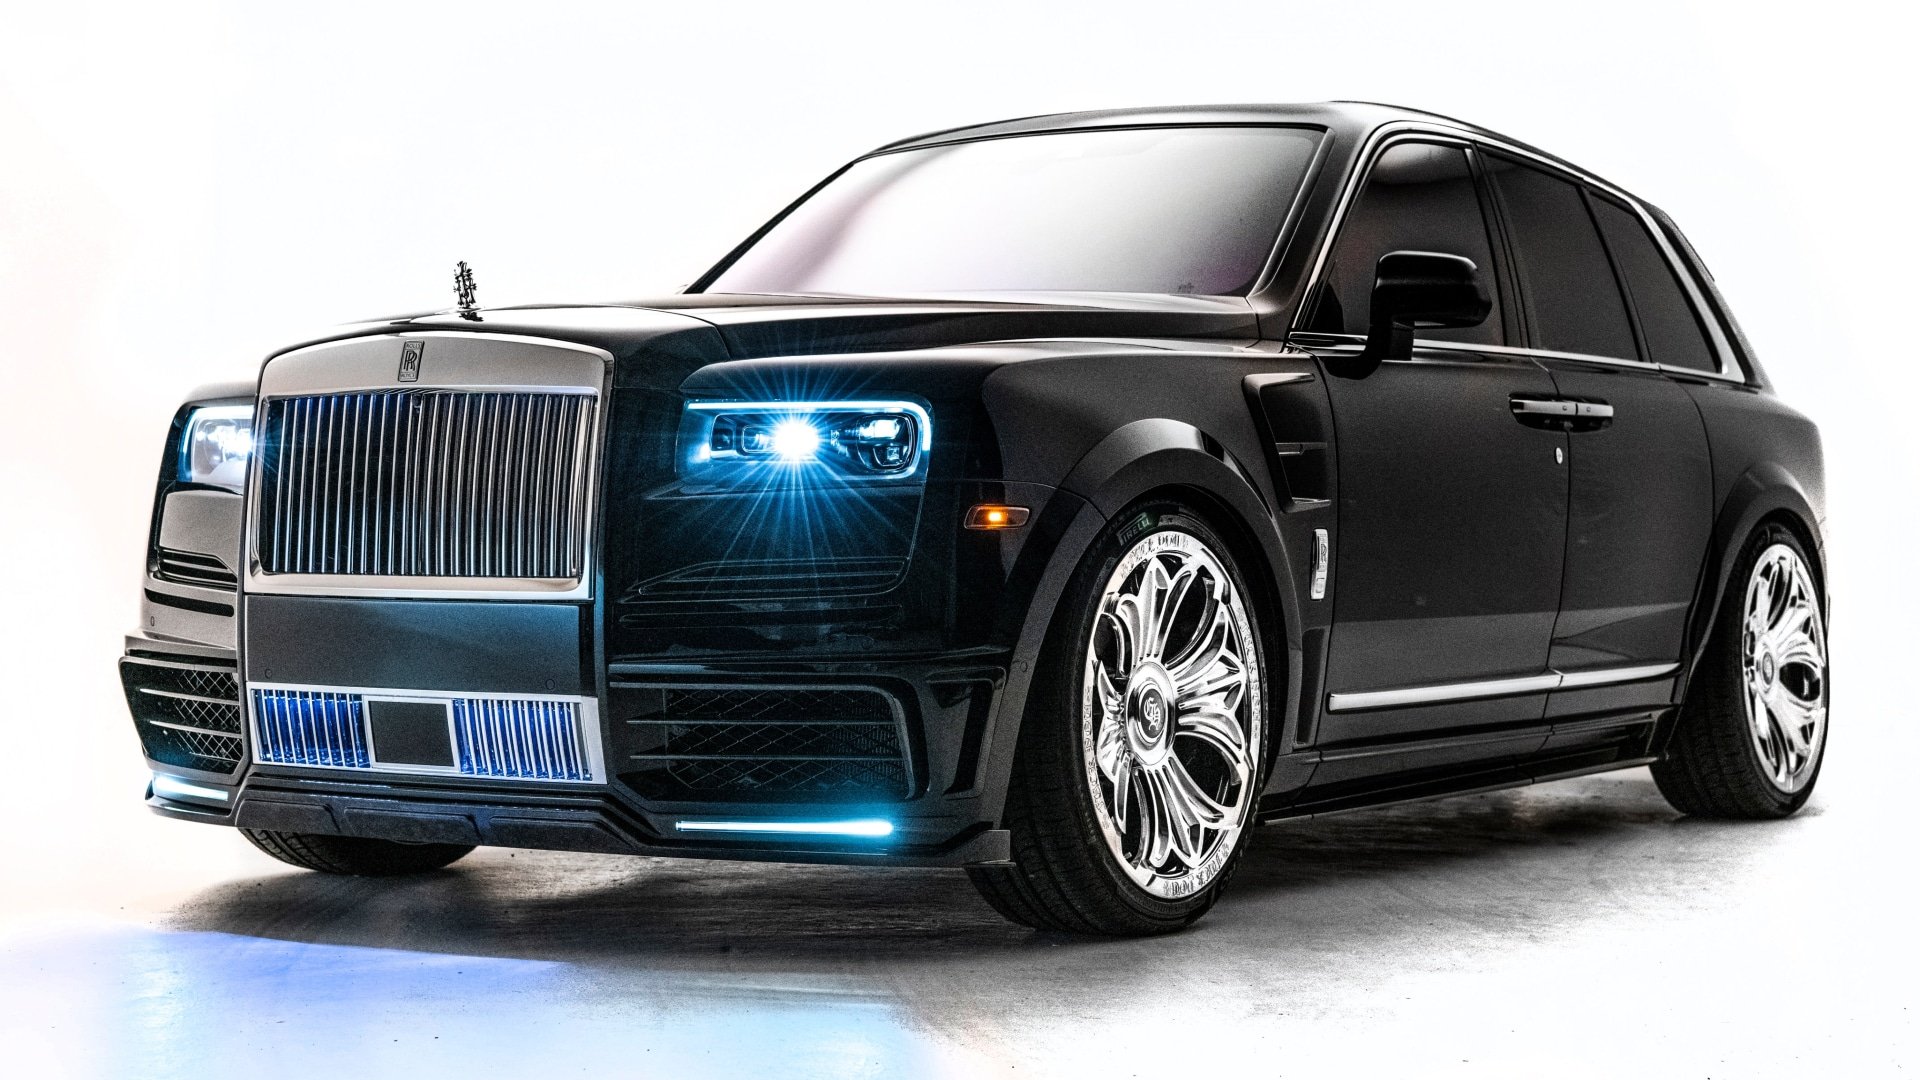 Drake's Rolls-Royce Cullinan Is Pretty Much A Mobile Strip Club